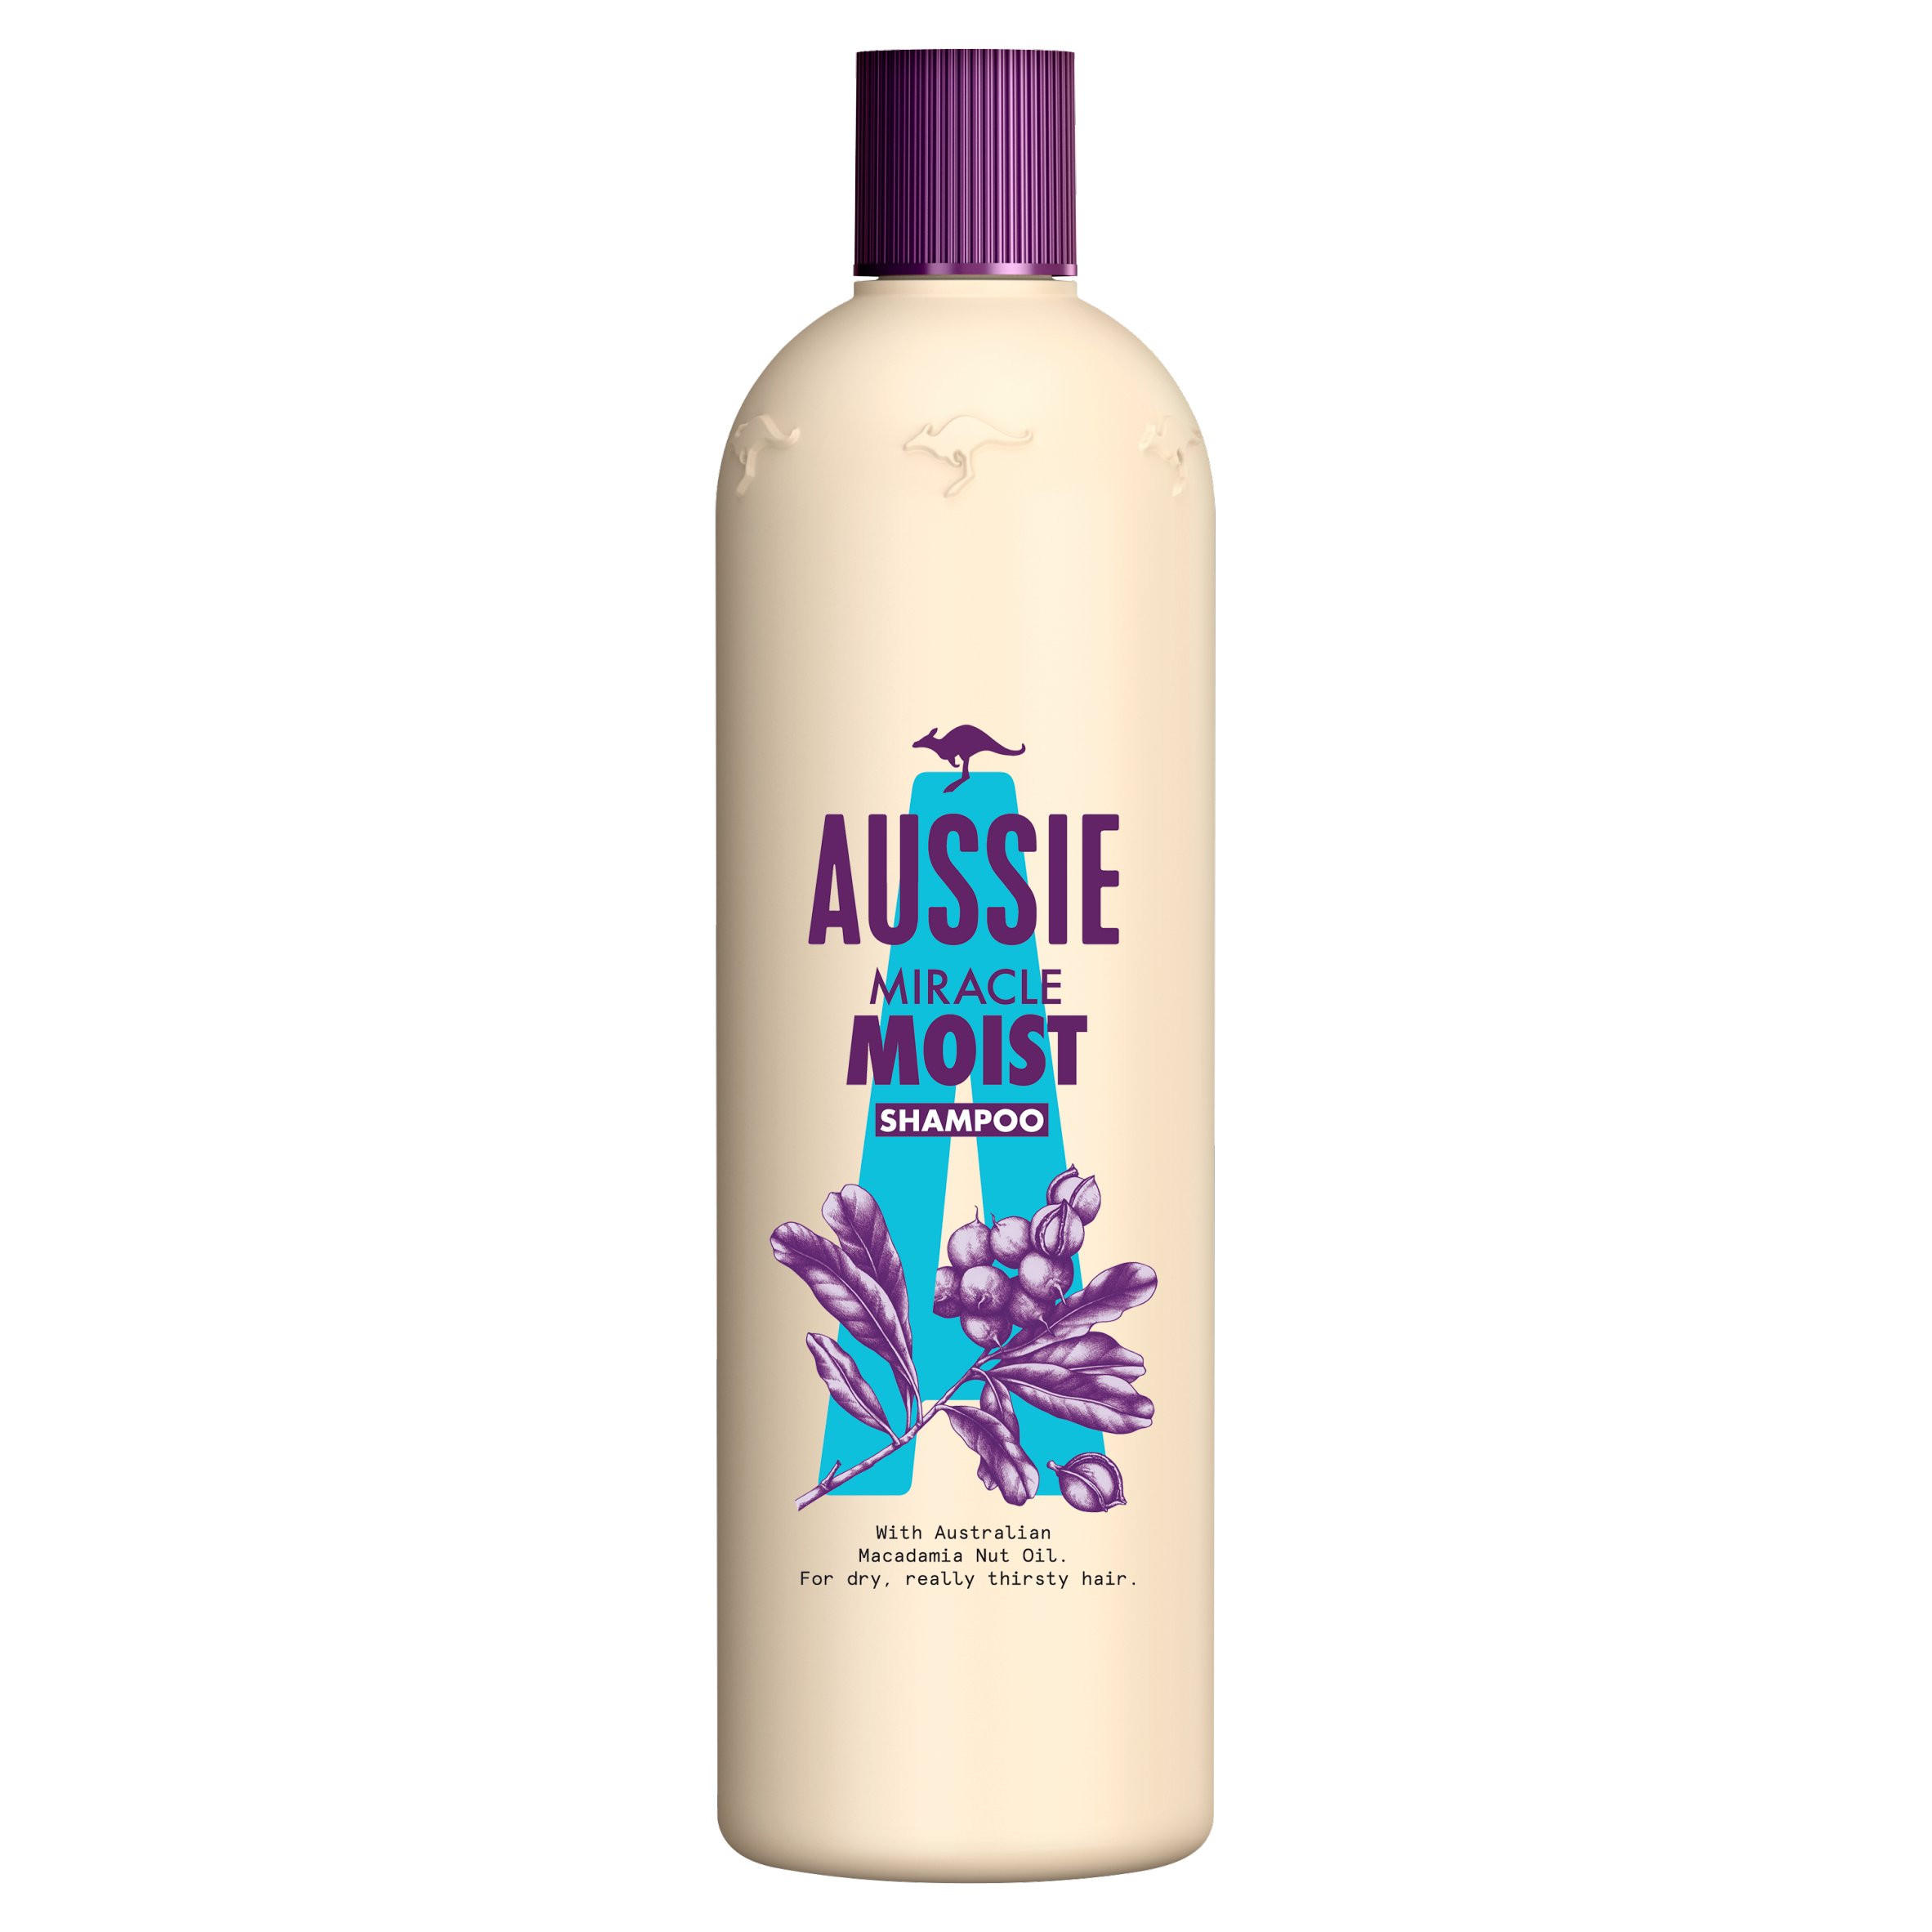 Aussie Miracle Moist Shampoo 500ml Moisturising Shampoo Haircare